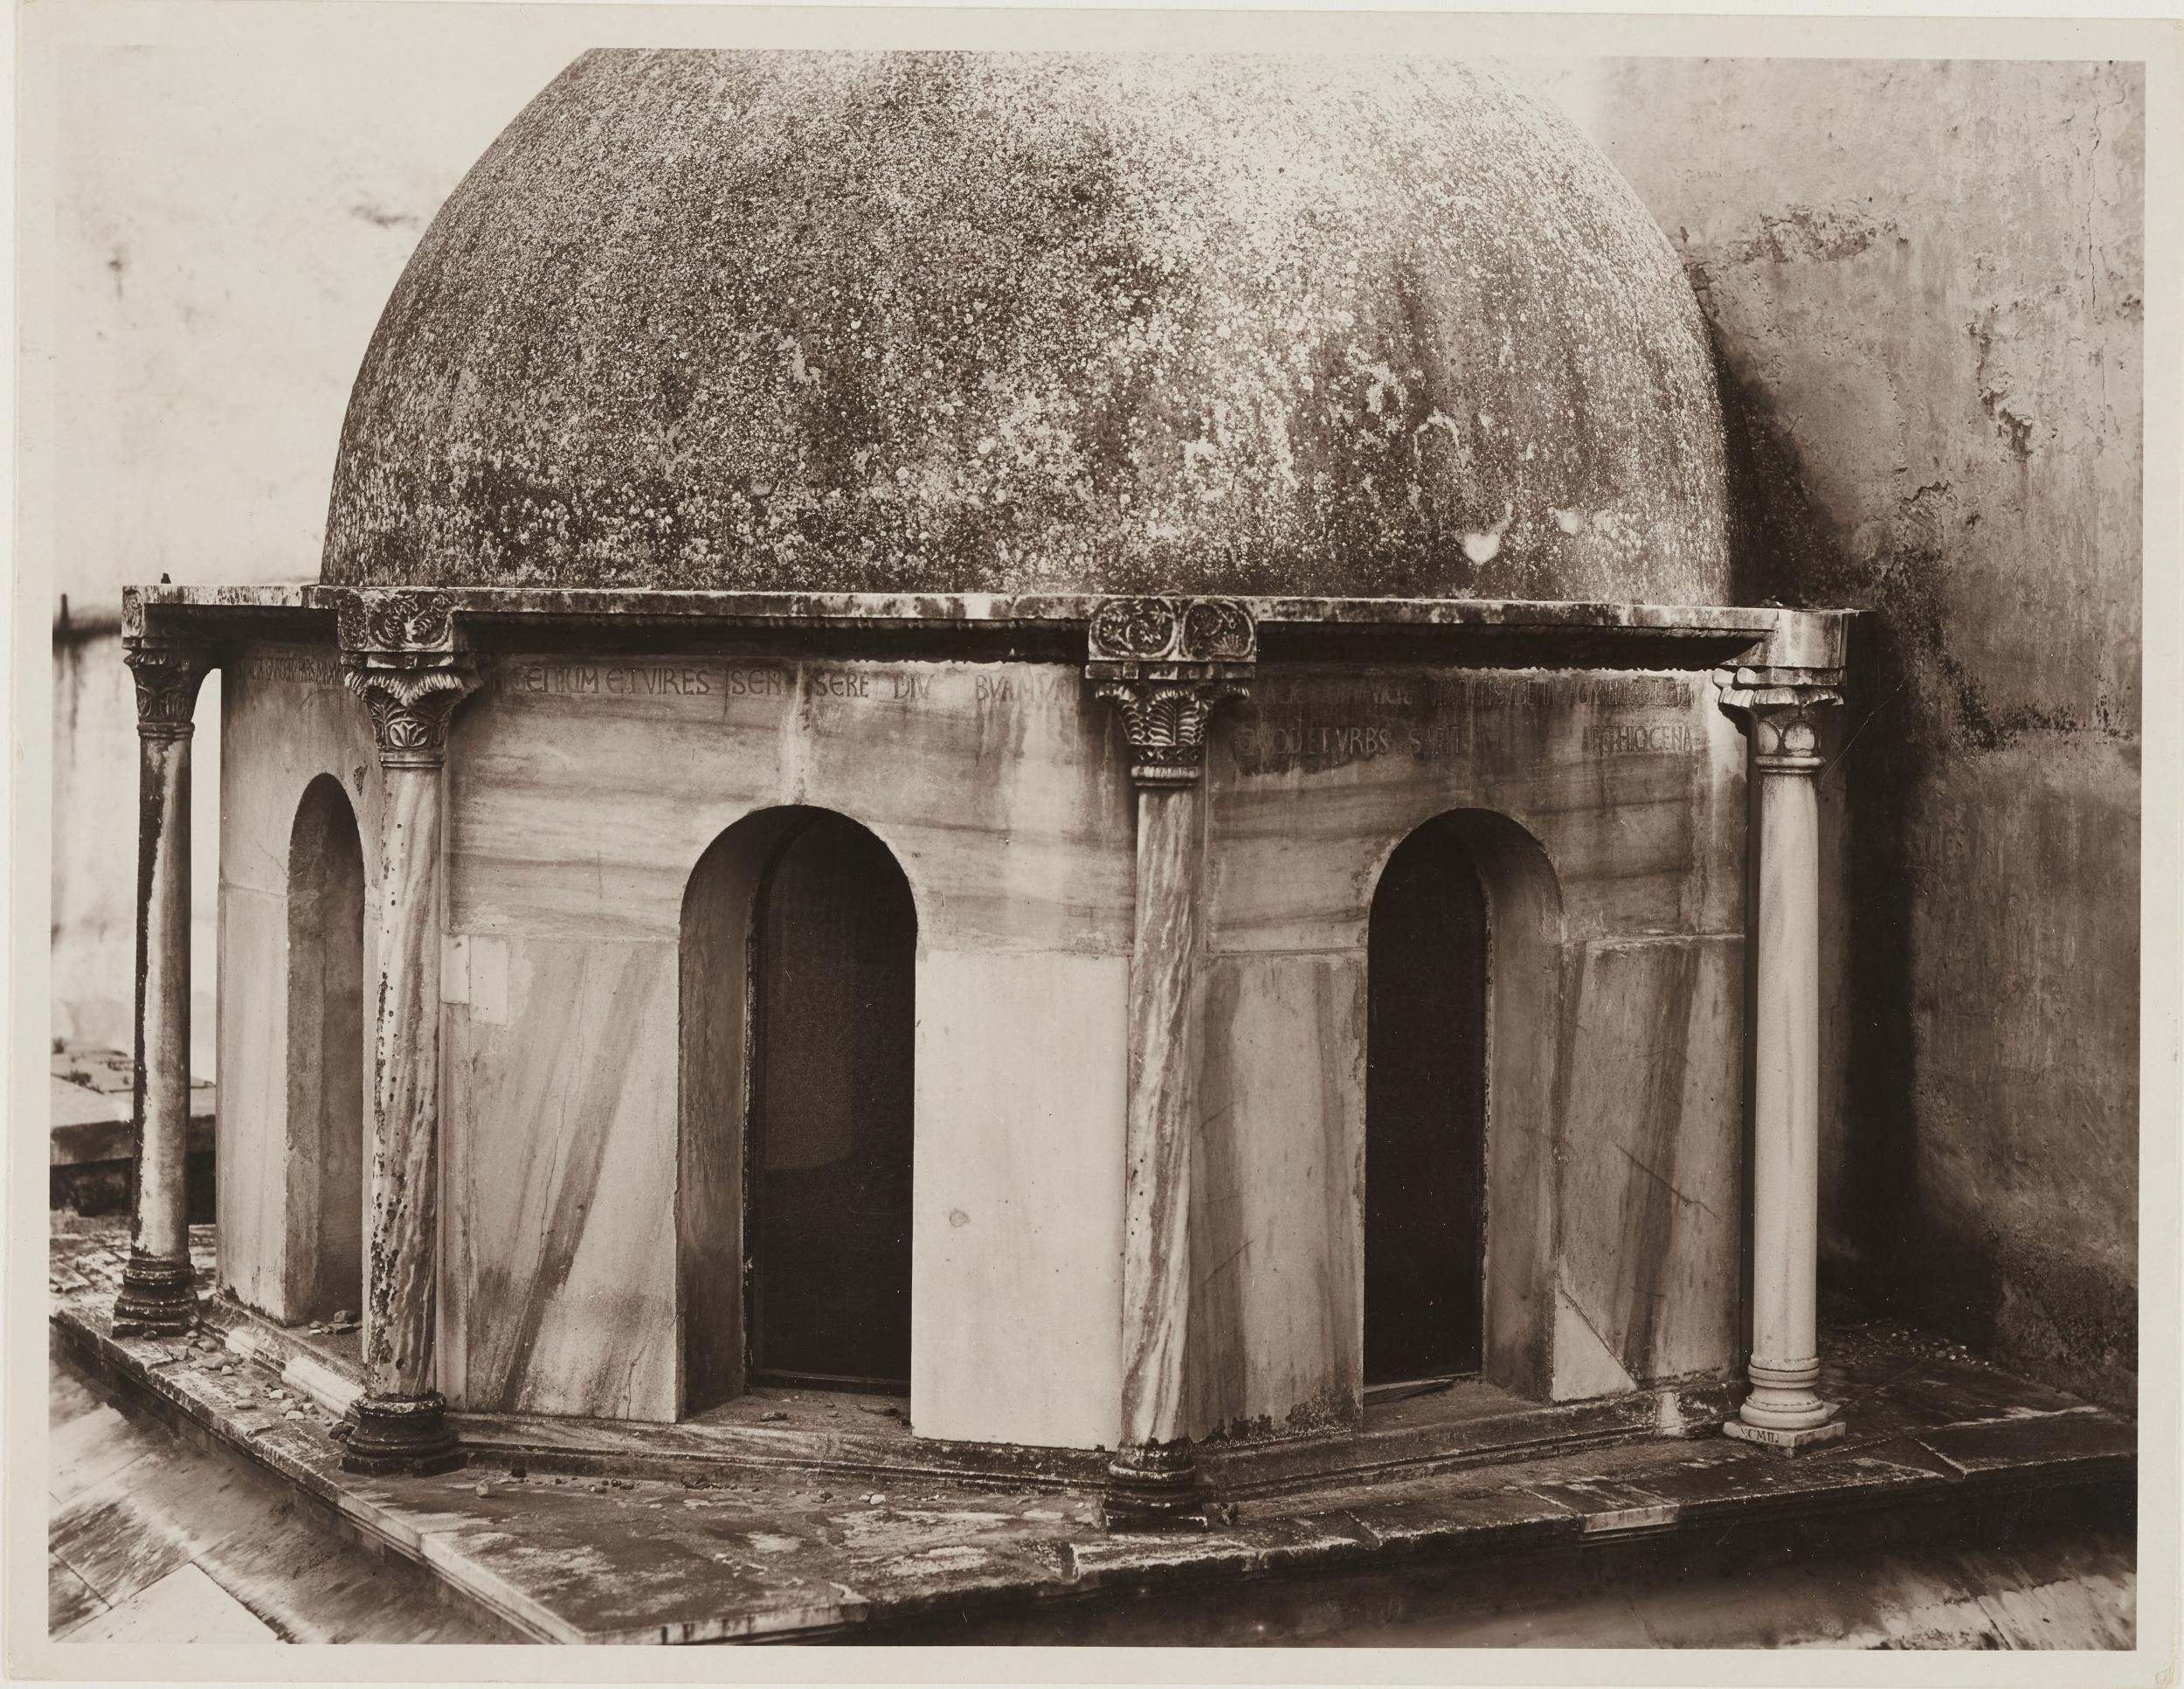 Antonio Ceccato, Canosa di Puglia - Cattedrale San Sabino, esterno, tomba di Boemondo, dopo il restauro, 1926-1950, gelatina ai sali d'argento/carta, 16,5x21,3 cm, MPI309697